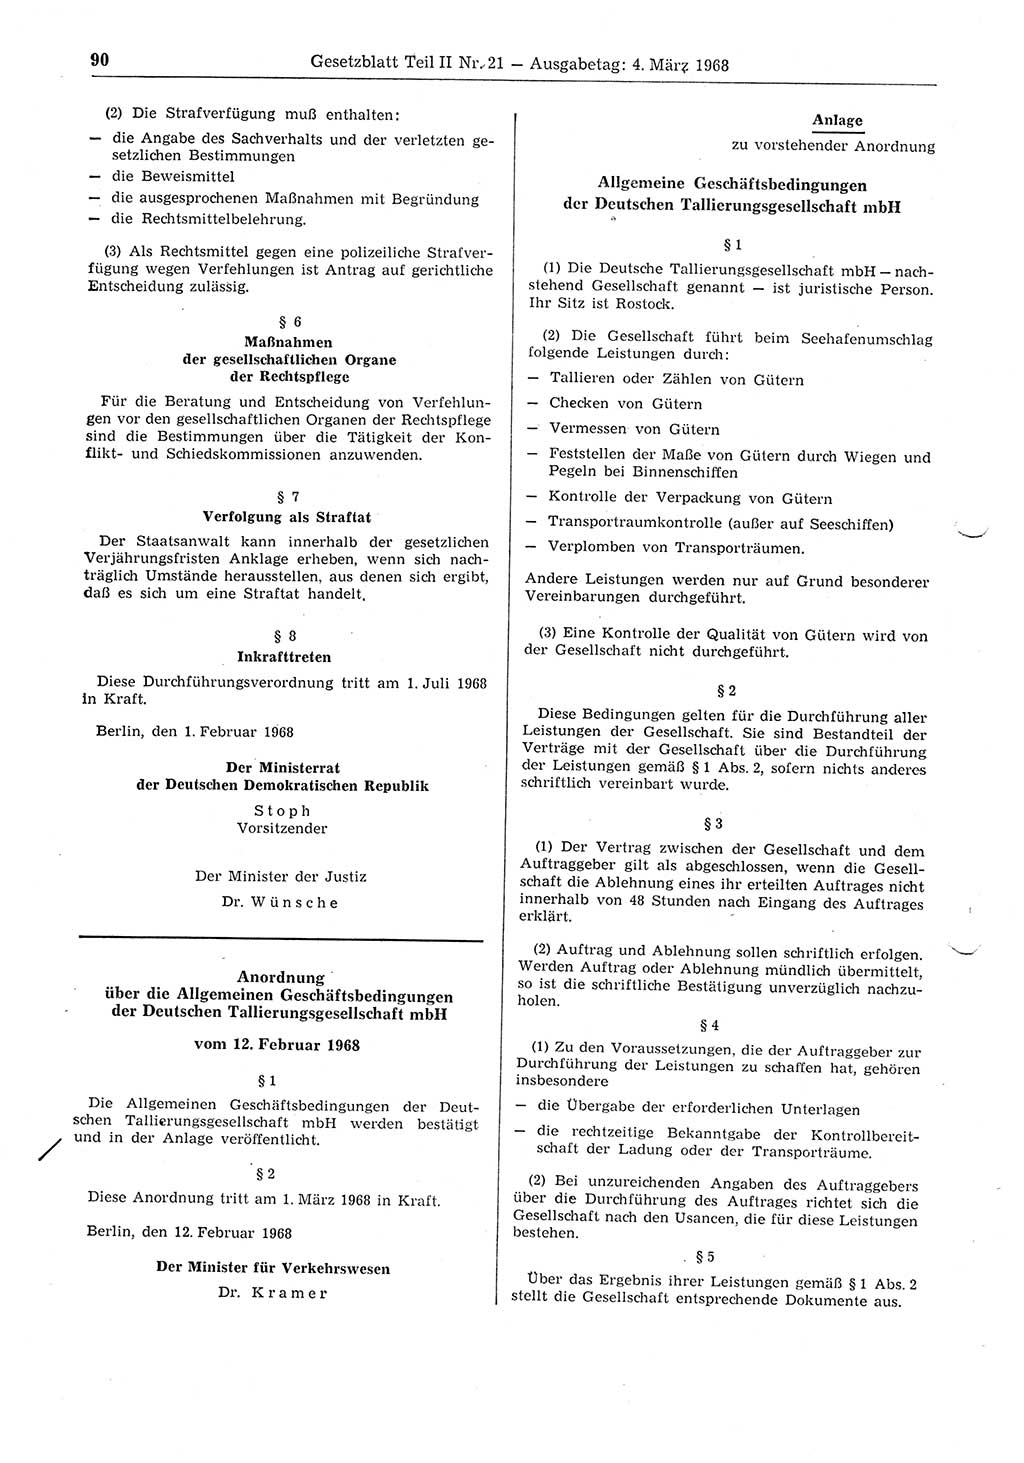 Gesetzblatt (GBl.) der Deutschen Demokratischen Republik (DDR) Teil ⅠⅠ 1968, Seite 90 (GBl. DDR ⅠⅠ 1968, S. 90)